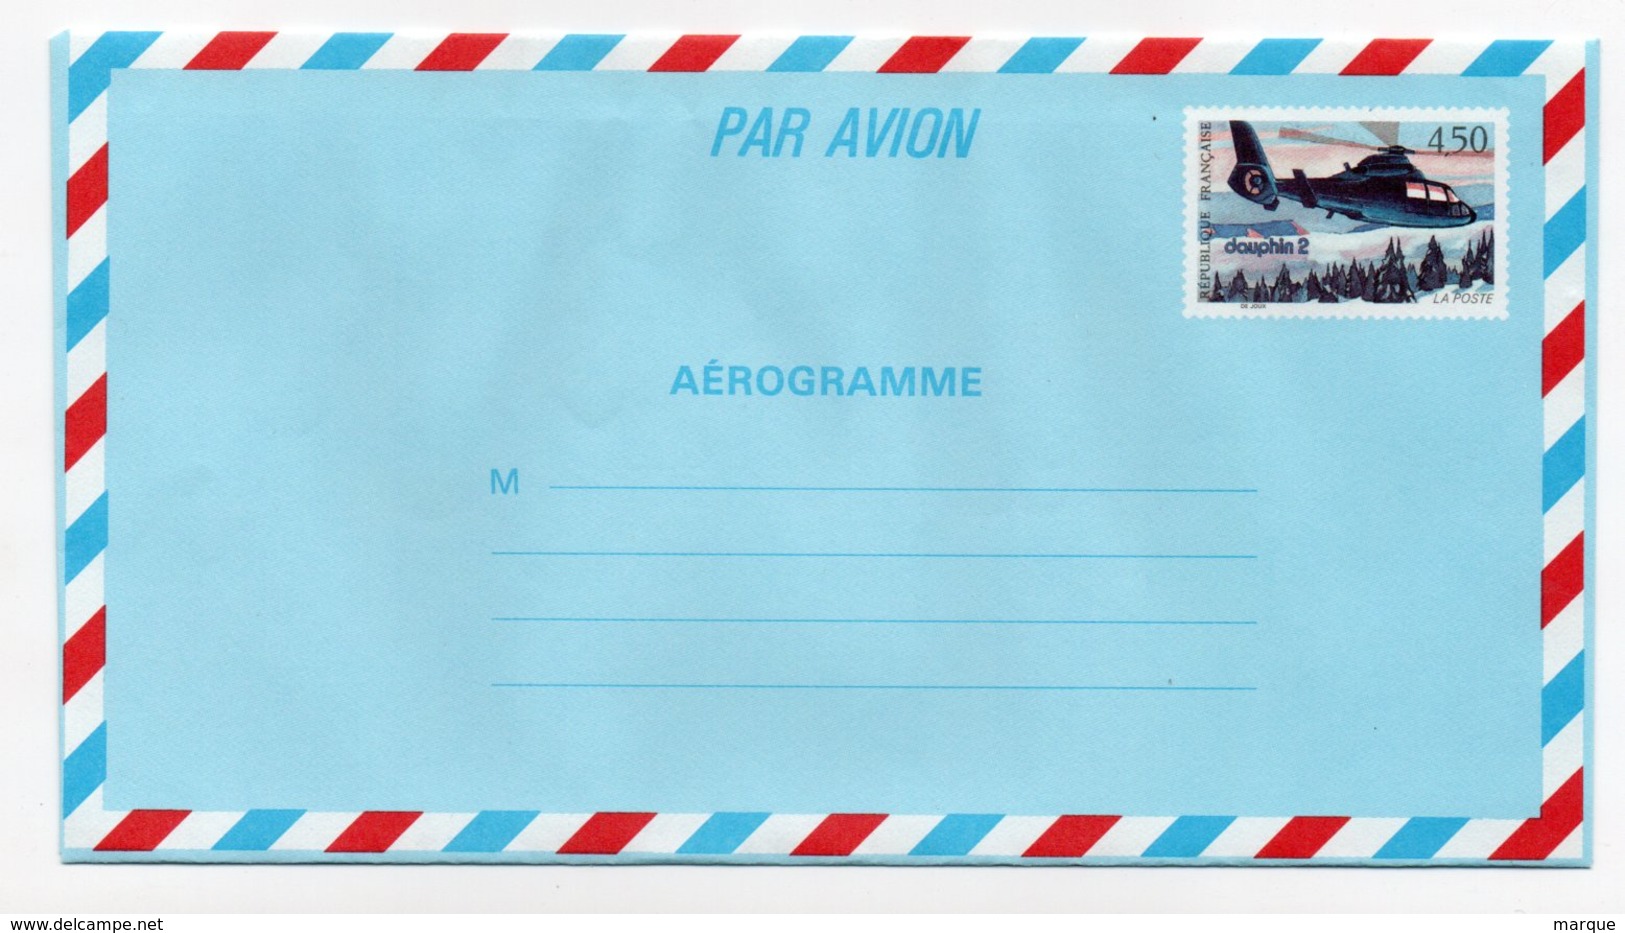 Aérogramme DAUPHIN 2 FRANCE Neuf Valeur 4.50f - Aerogramas